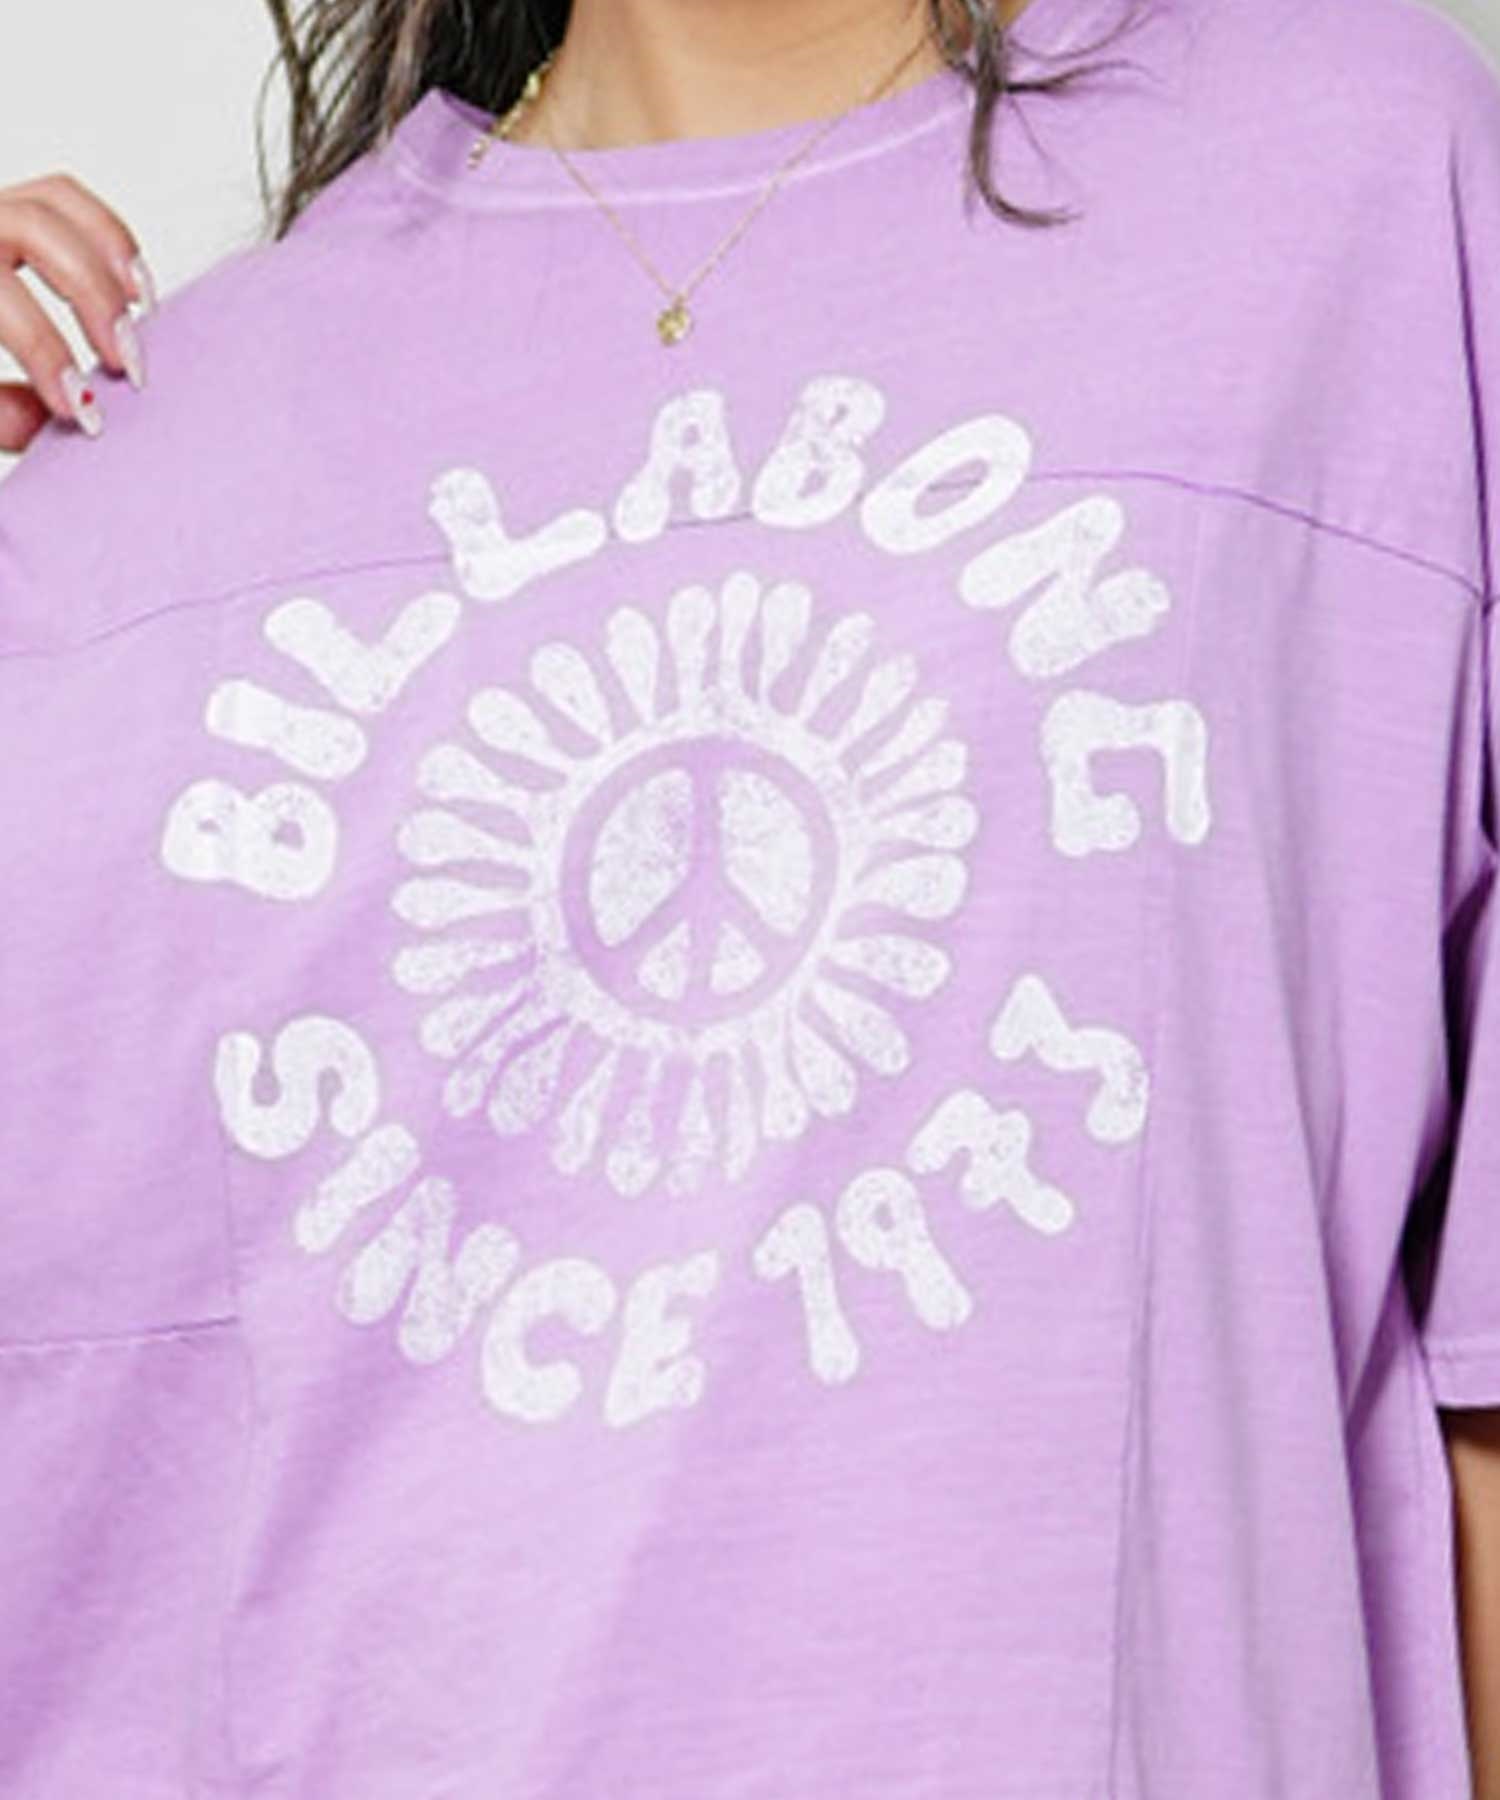 【クーポン対象】BILLABONG ビラボン BE013-213 レディース 半袖 Tシャツ ビックシルエット(BSD-M)